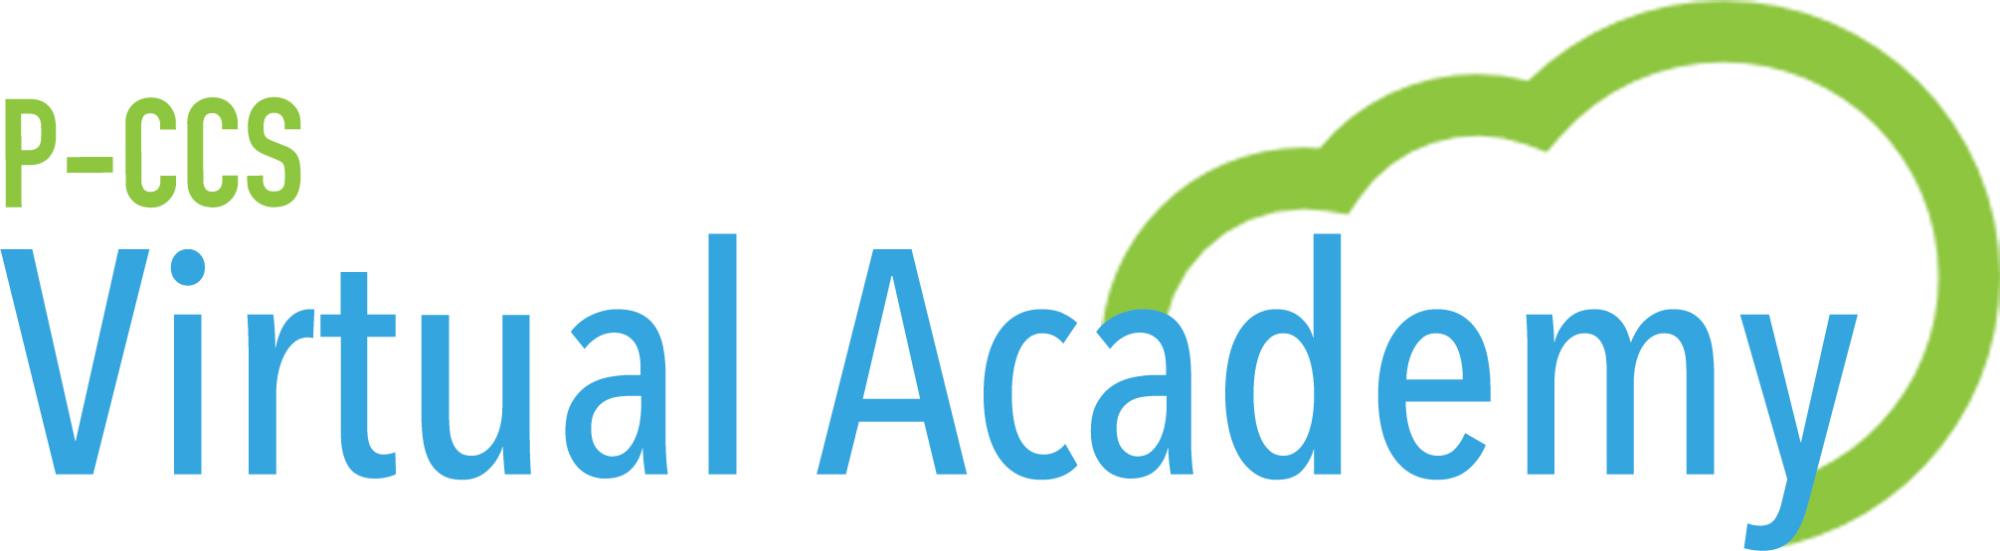 P-CCS Virtual academy logo